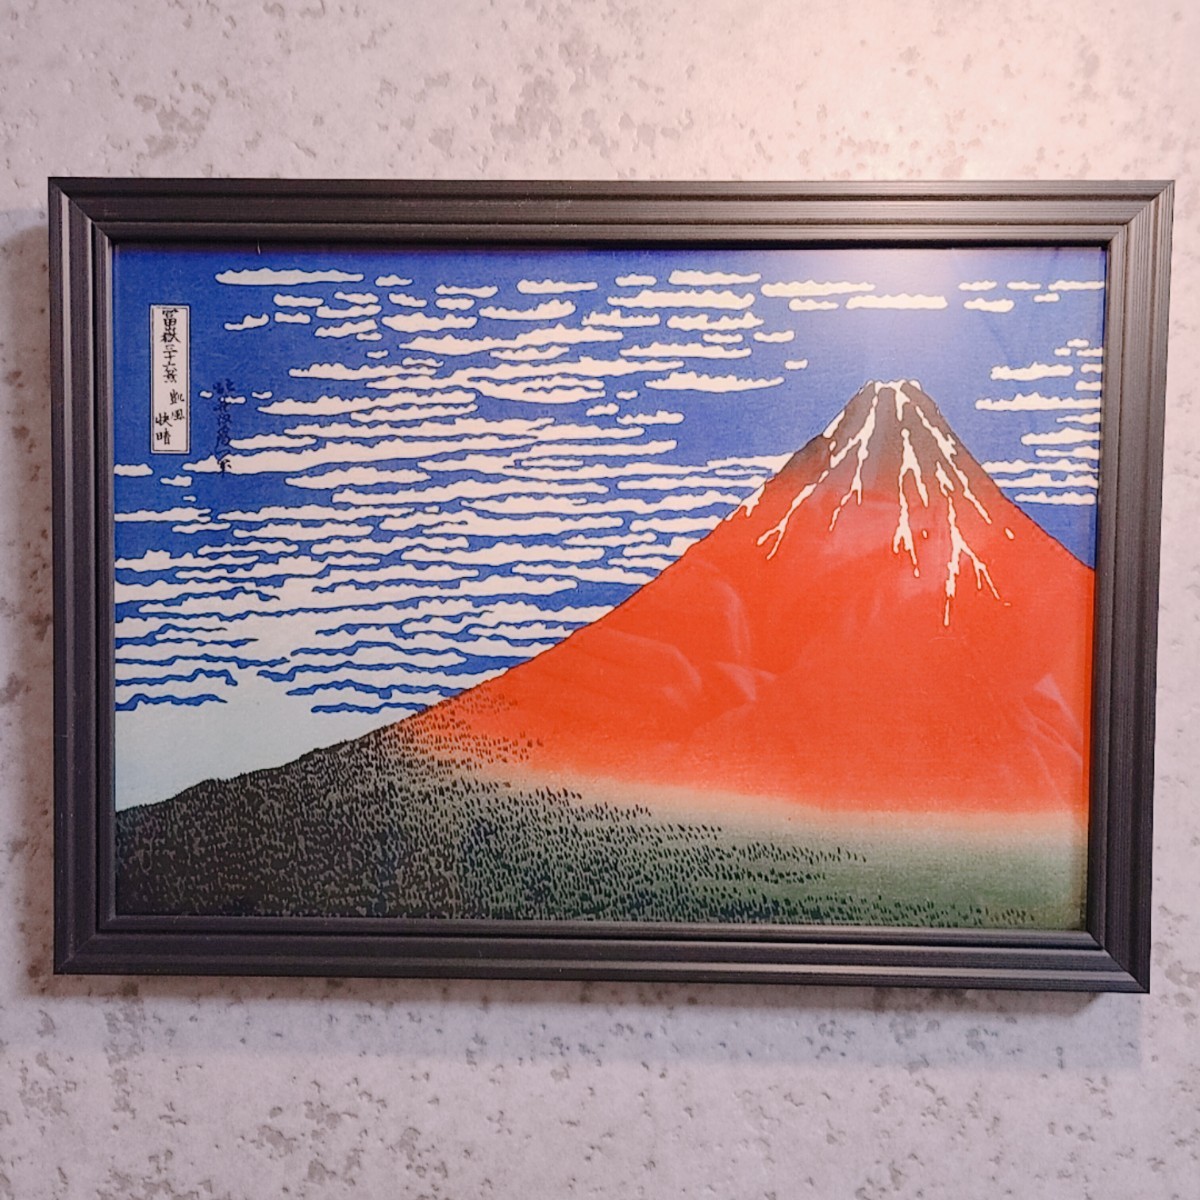 富嶽三十六景 凱風快晴 赤富士 絵画 インテリア 風景画